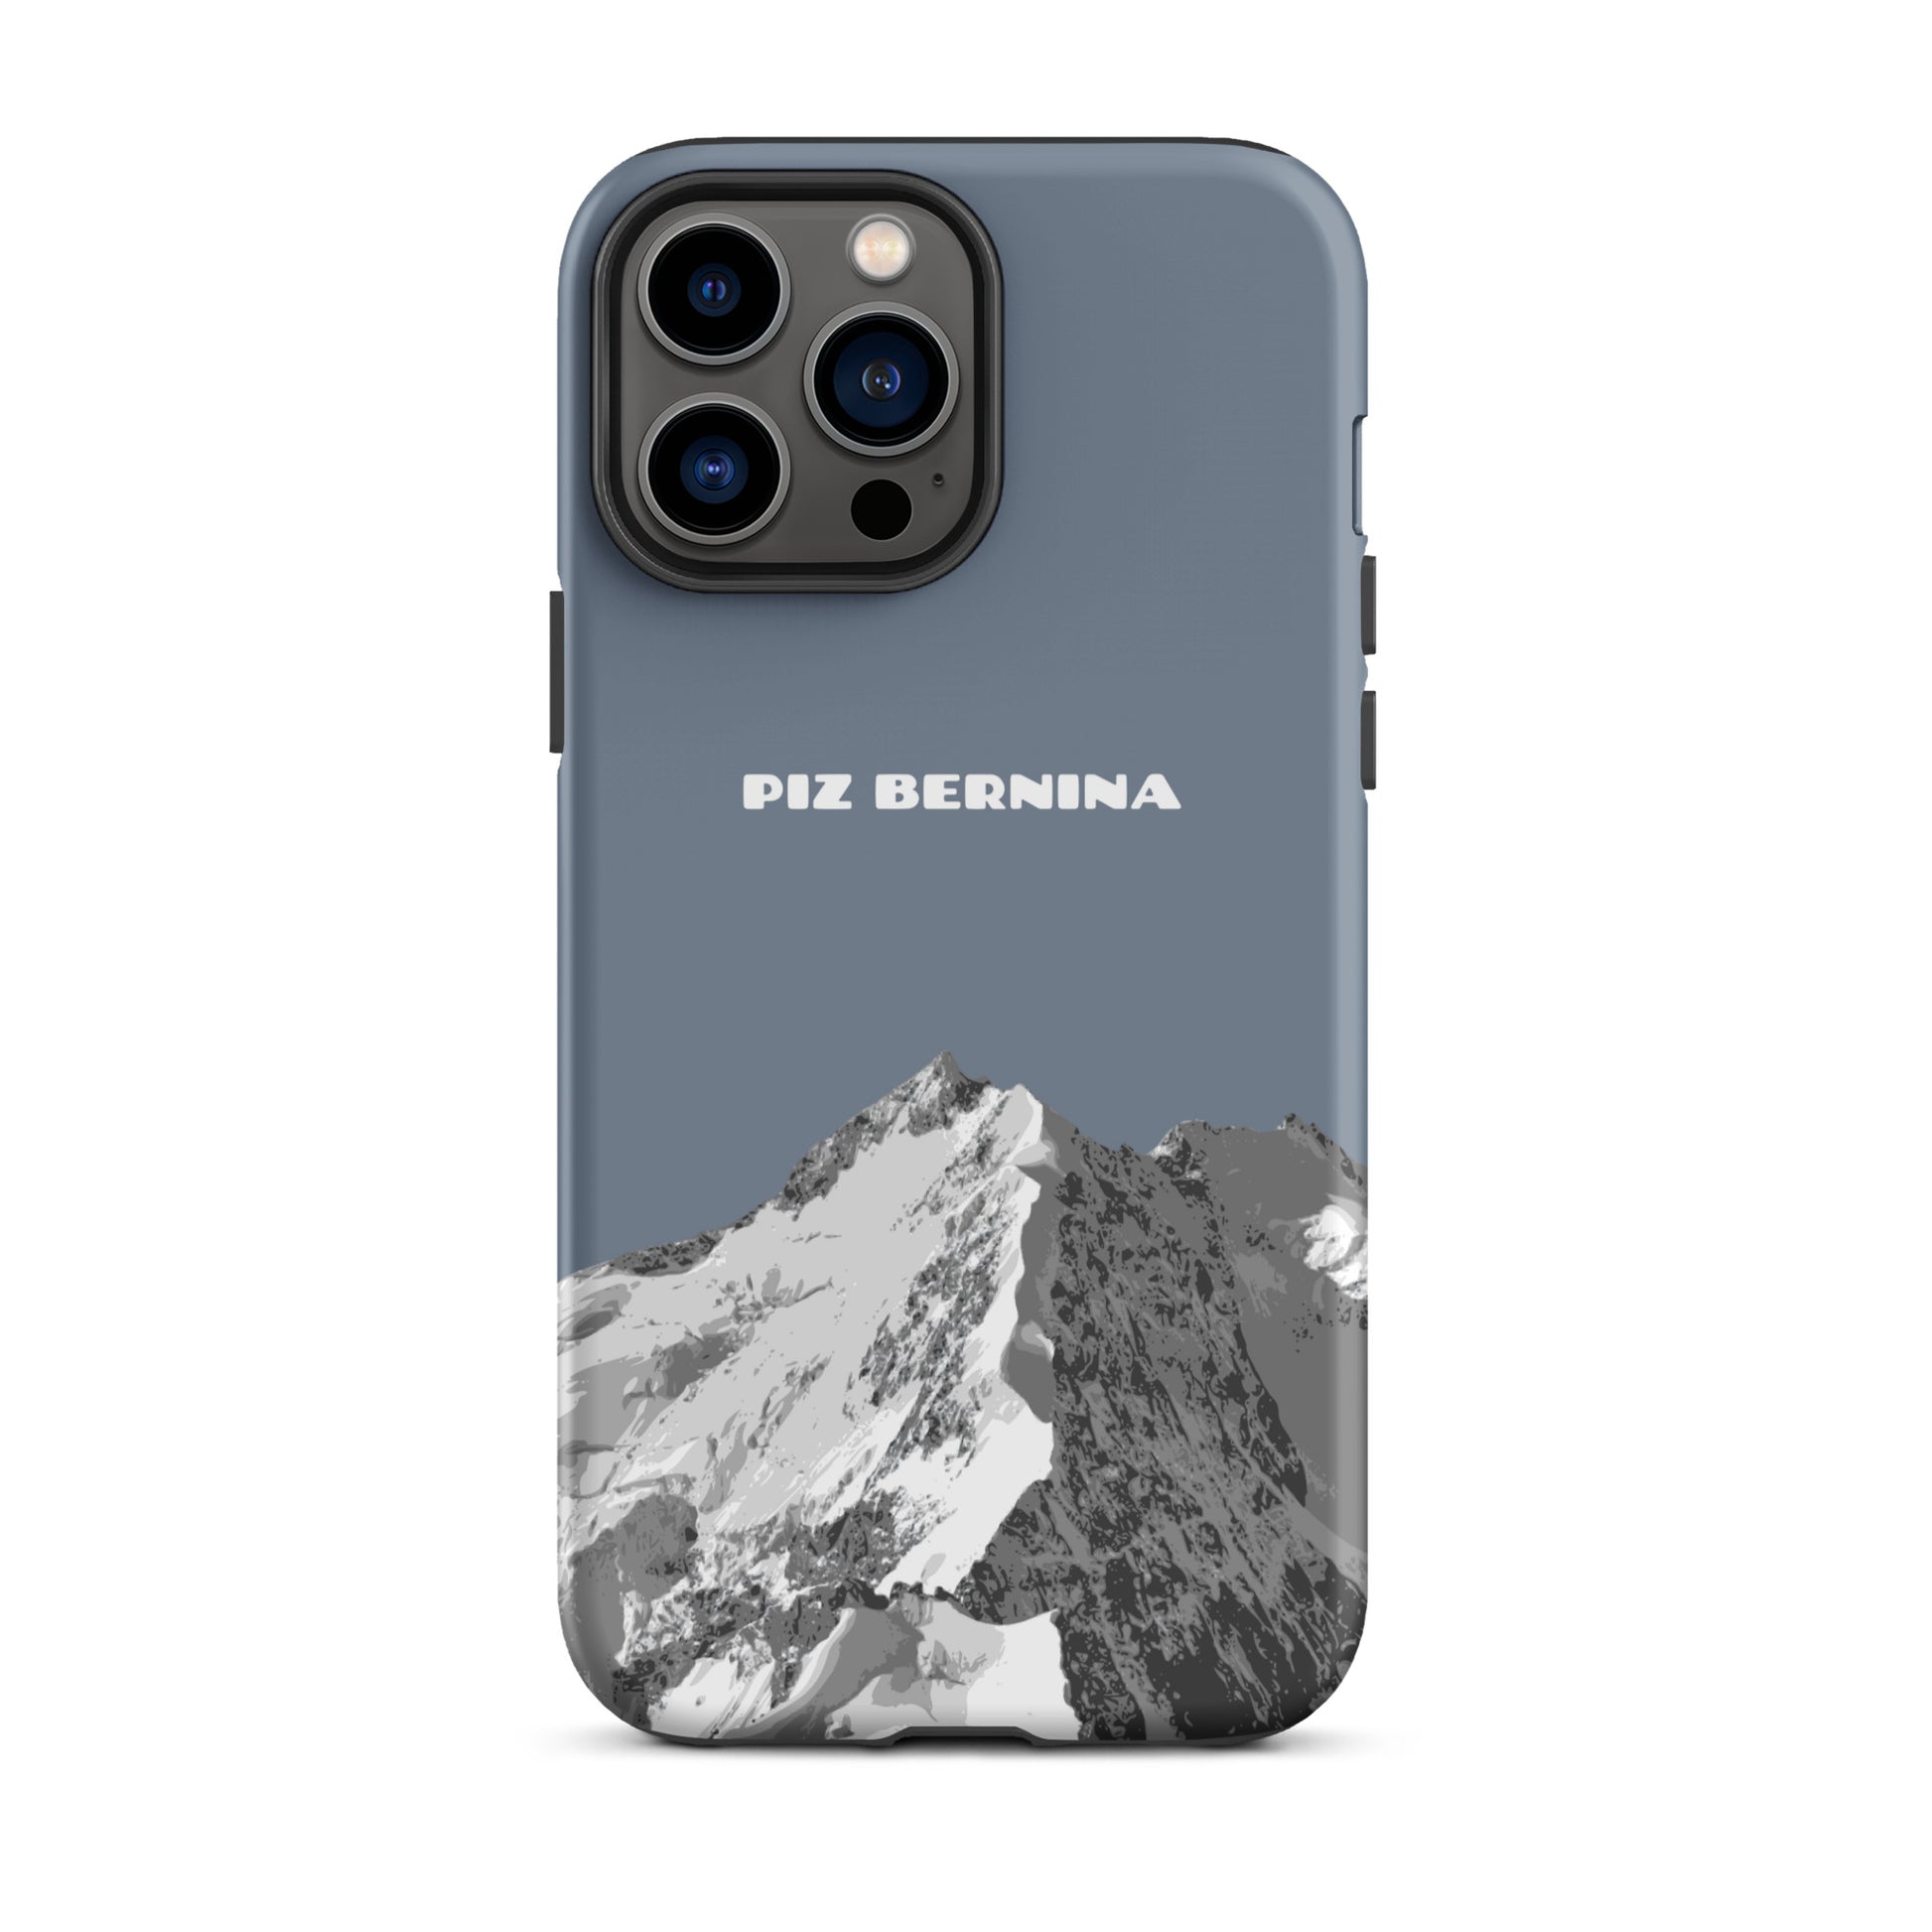 Hülle für das iPhone 13 Pro Max von Apple in der Farbe Schiefergrau, dass den Piz Bernina in Graubünden zeigt.